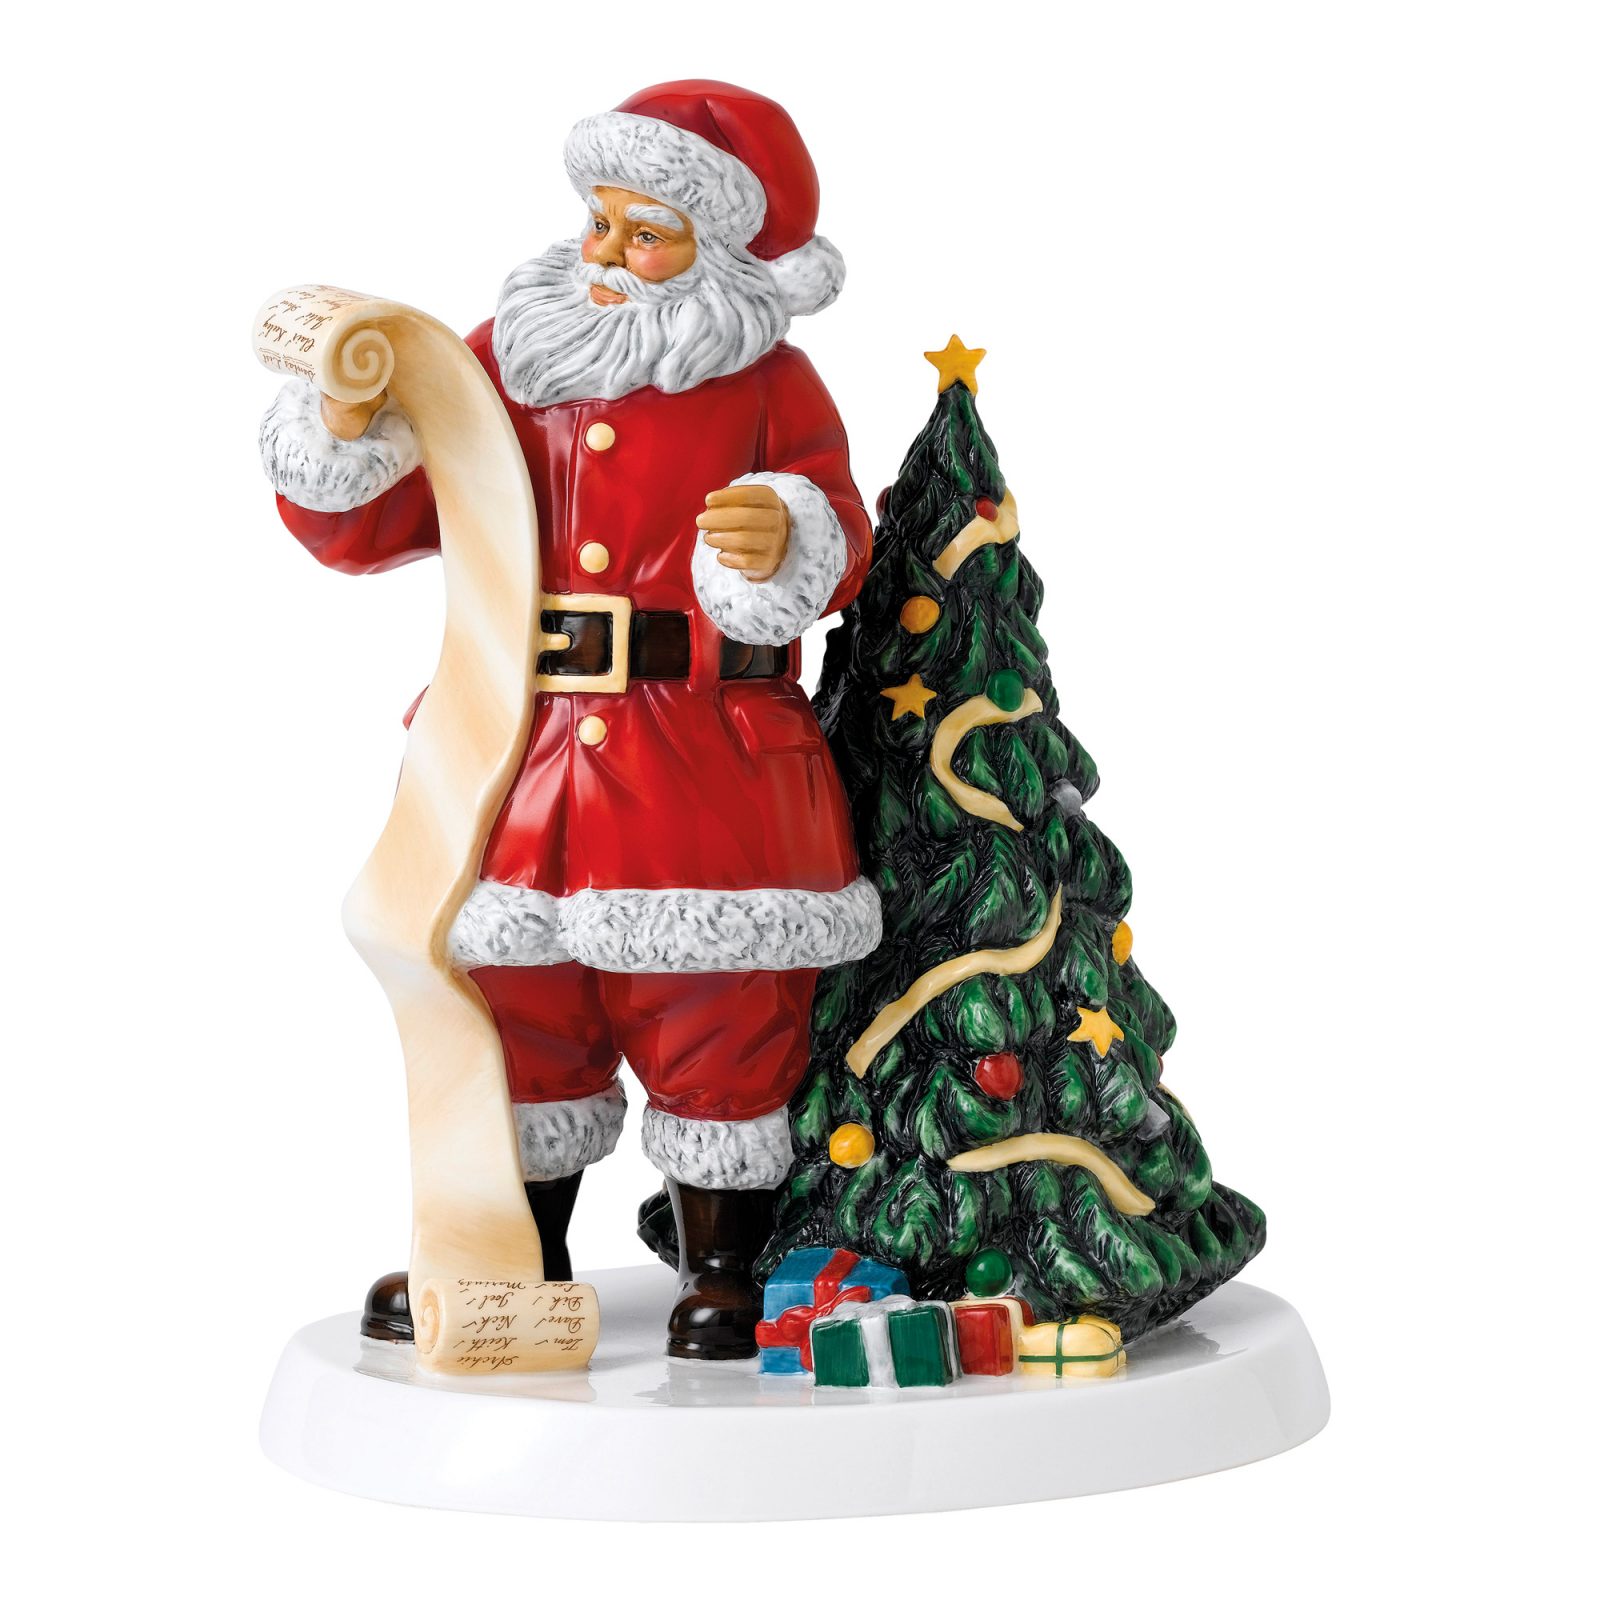 Father Christmas 2018 HN5891 - Royal Doulton Figurine